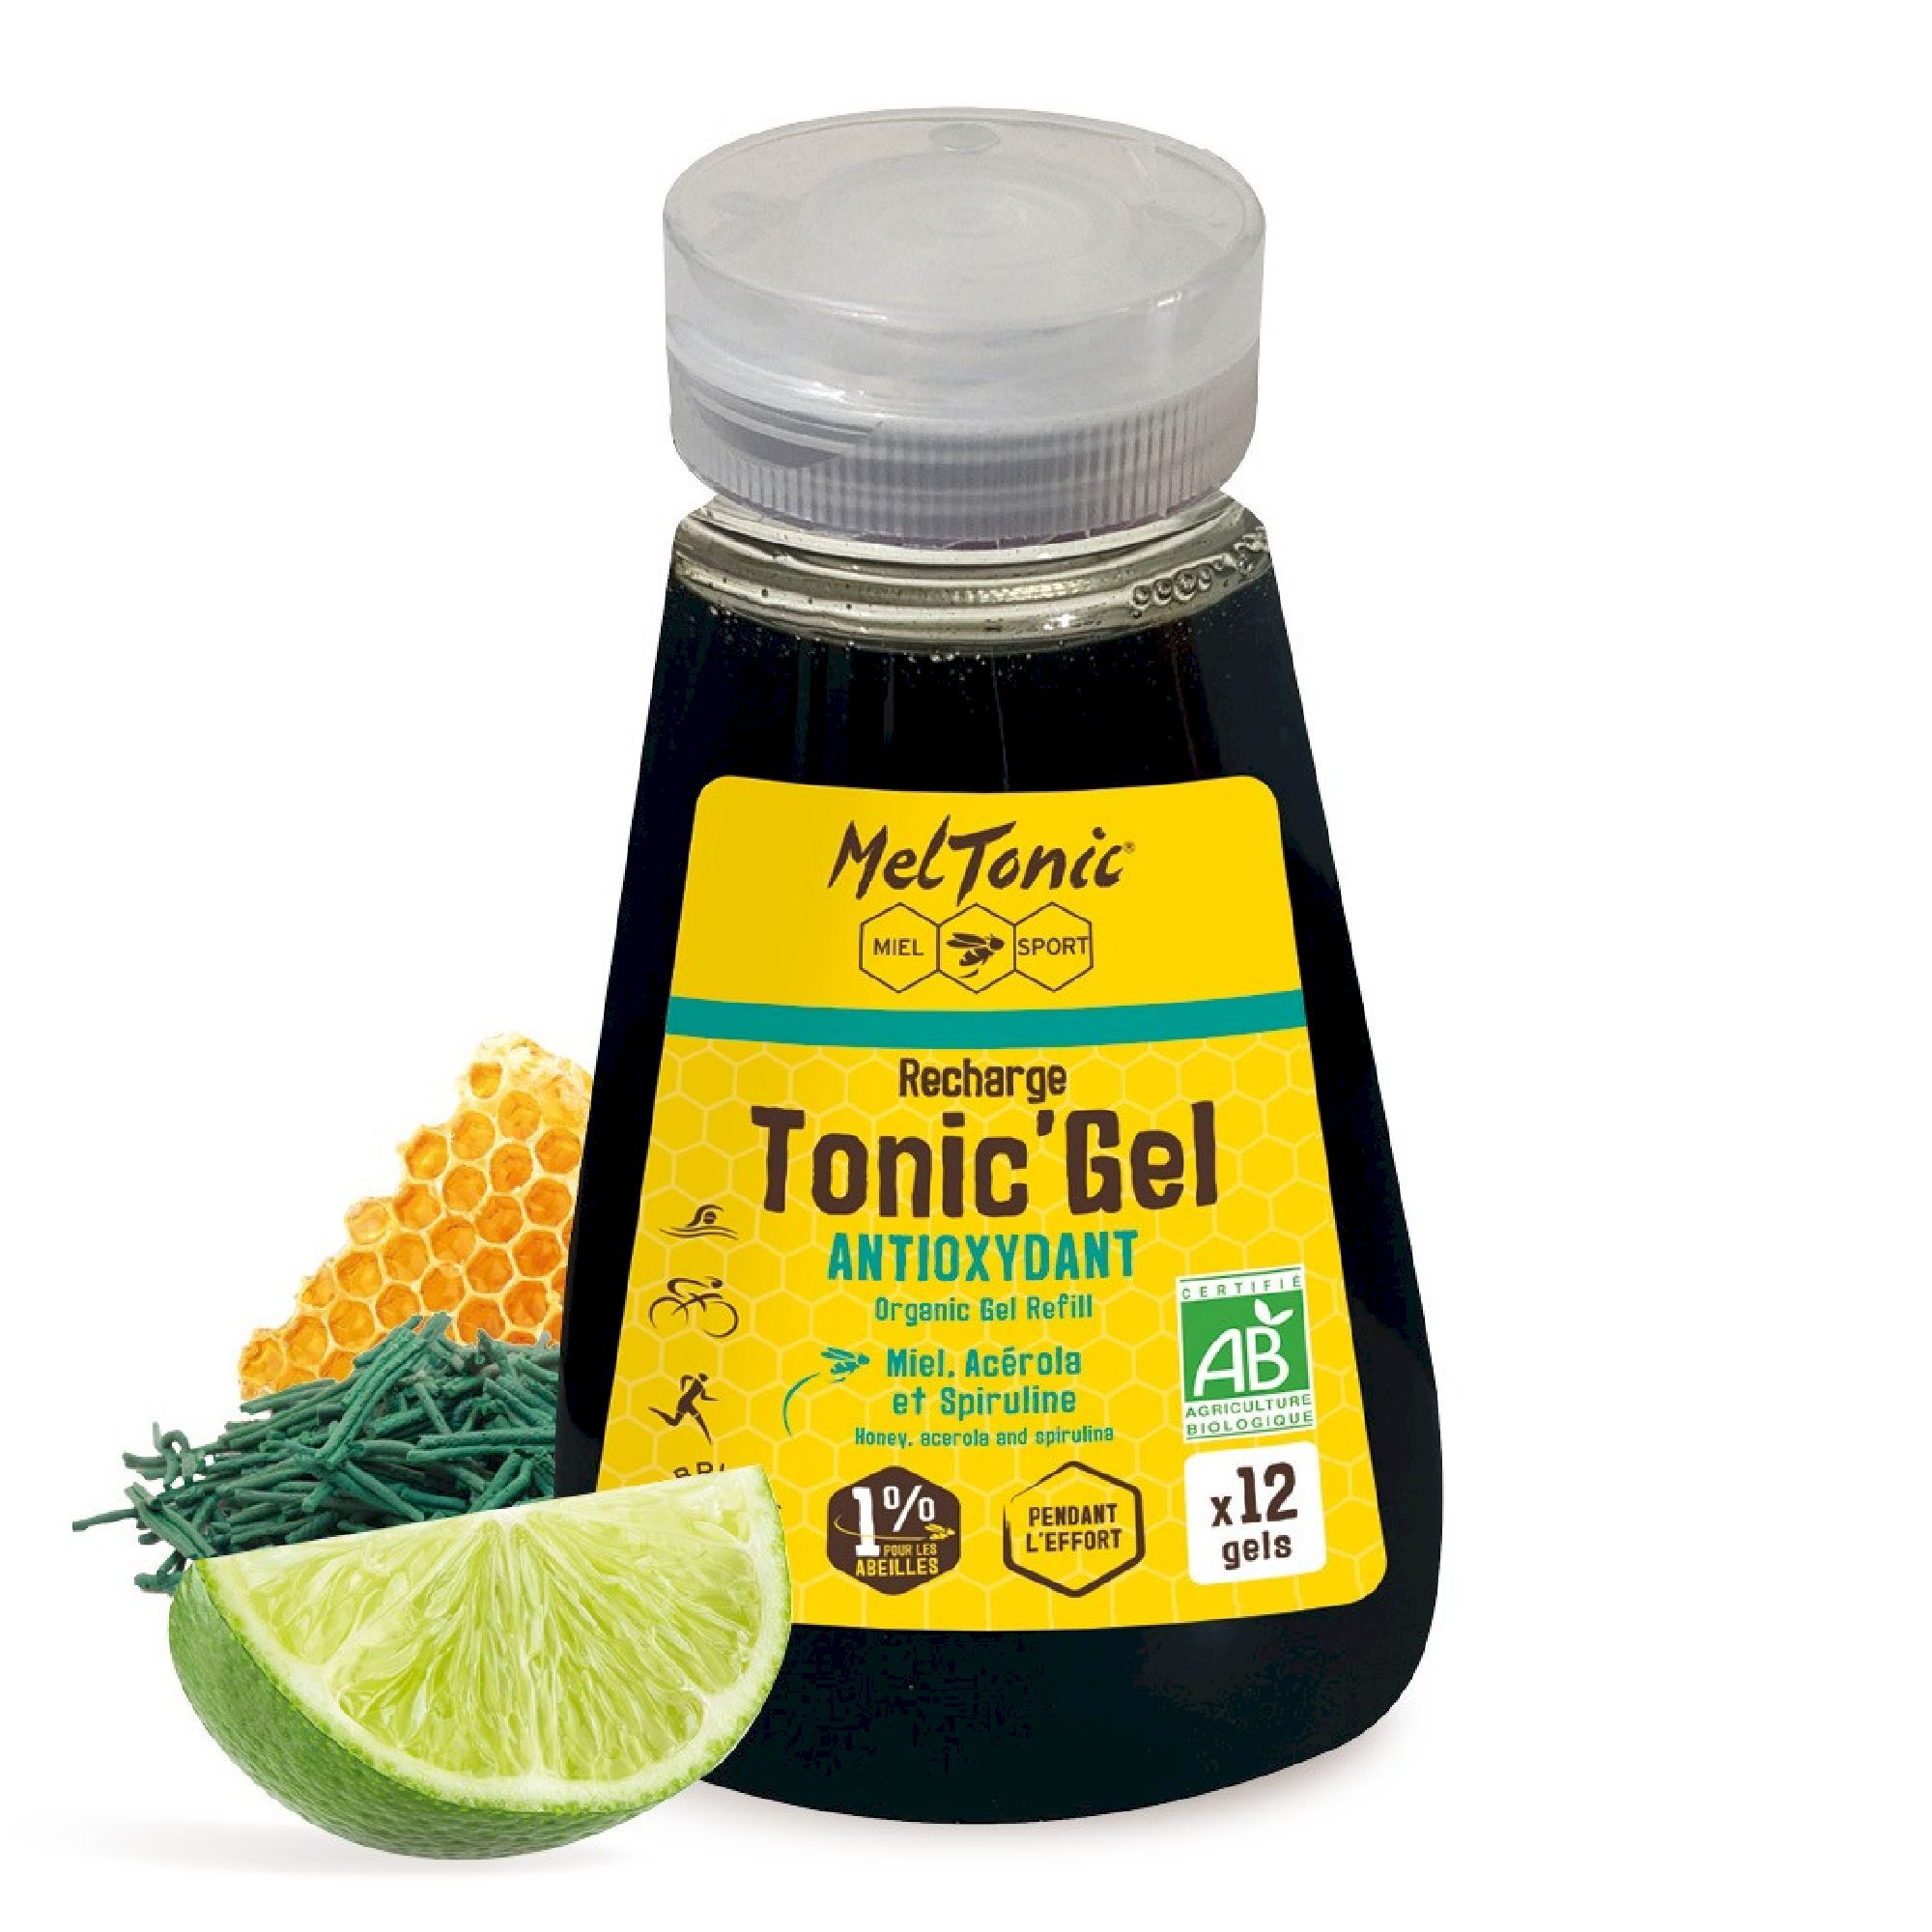 Meltonic Tonic Gel Bio Antioxydant - Recharge Eco - Energigel